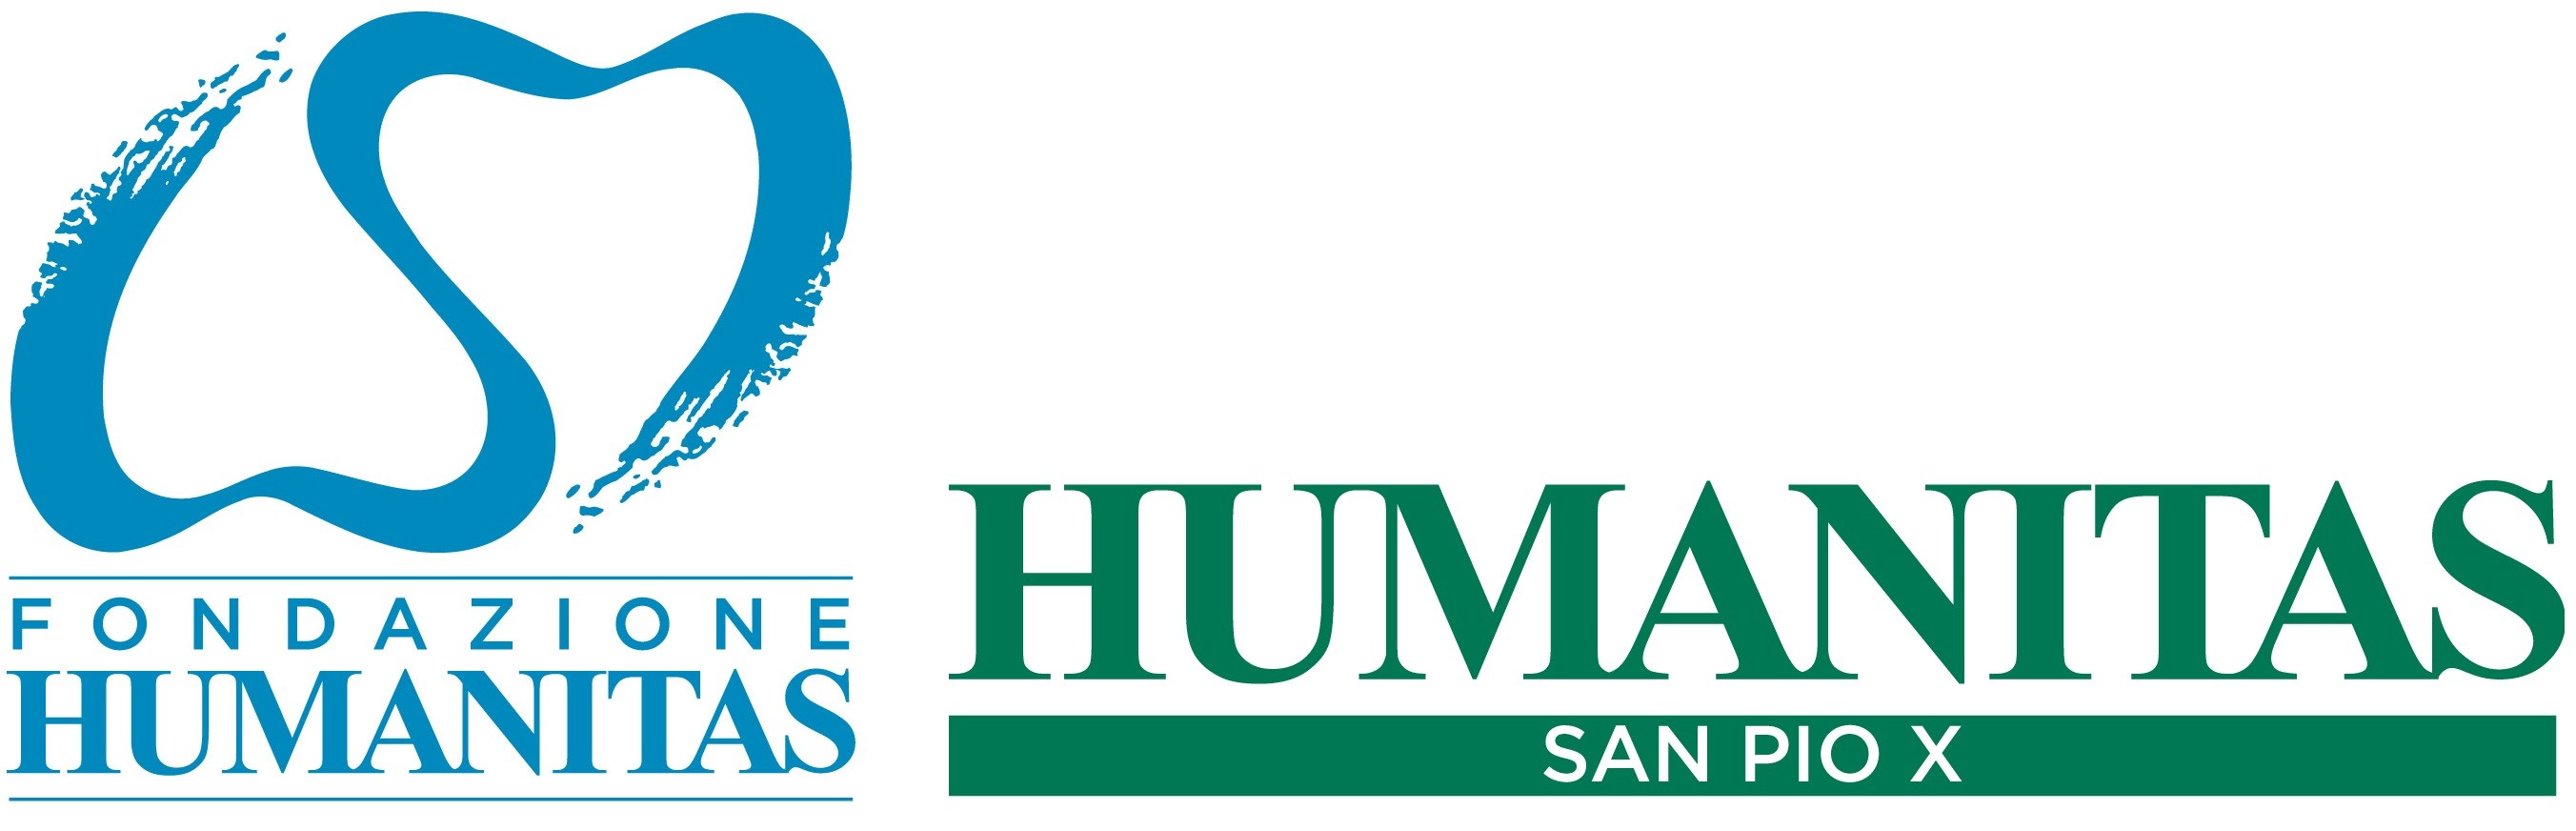 Fondazione Humanitas e Humanitas San Pio X